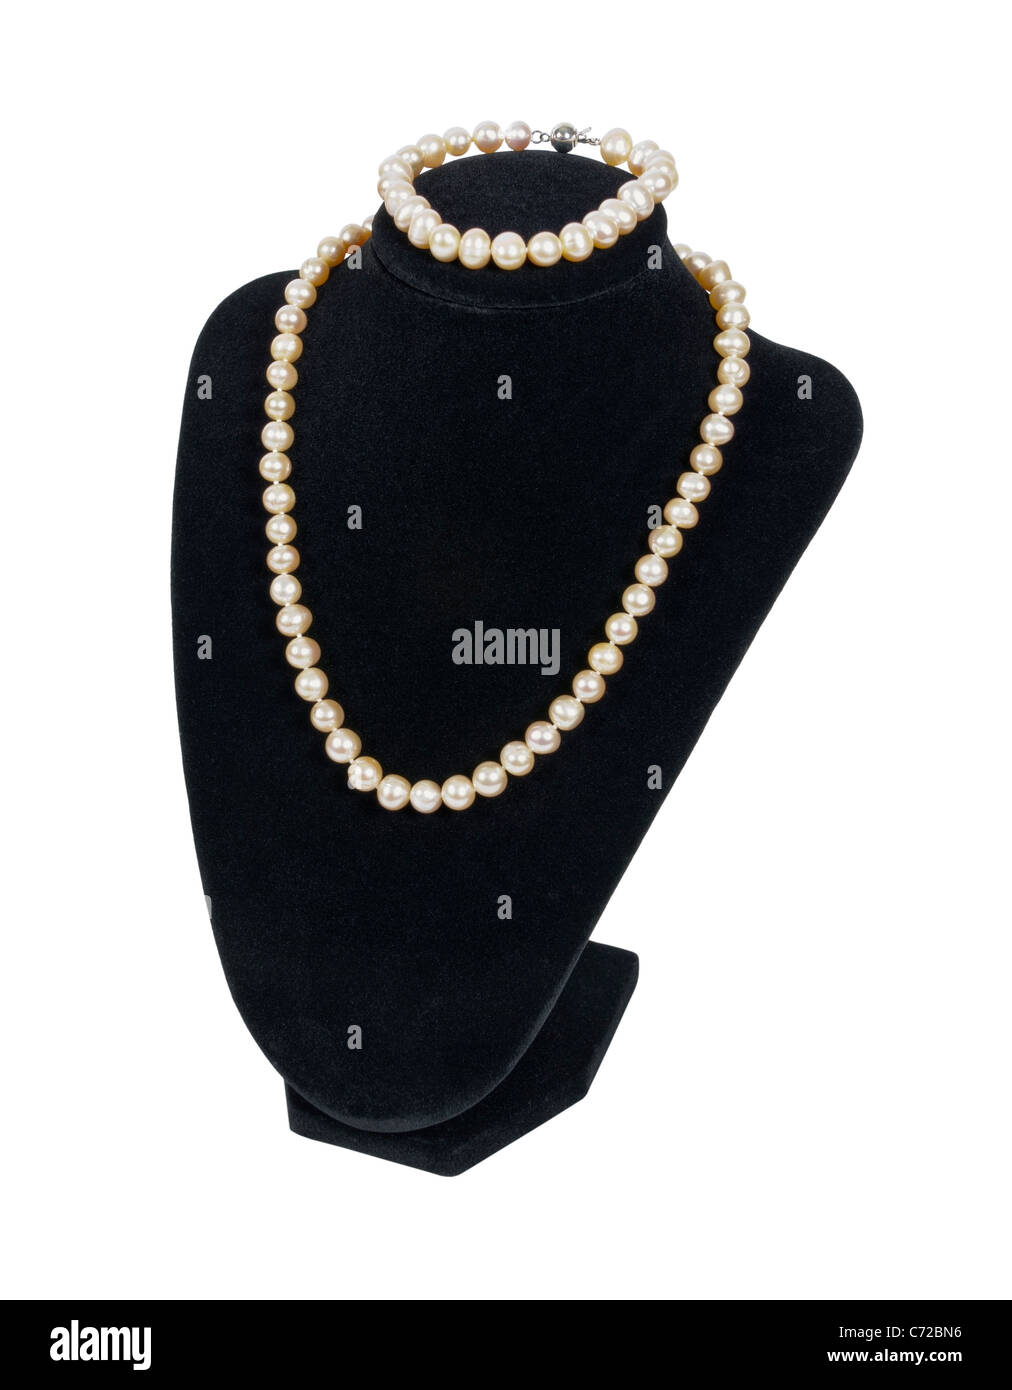 Perlenkette und Armband auf schwarzem Samt Hals Form ist ein erschwinglicher Luxus - Pfad enthalten Stockfoto